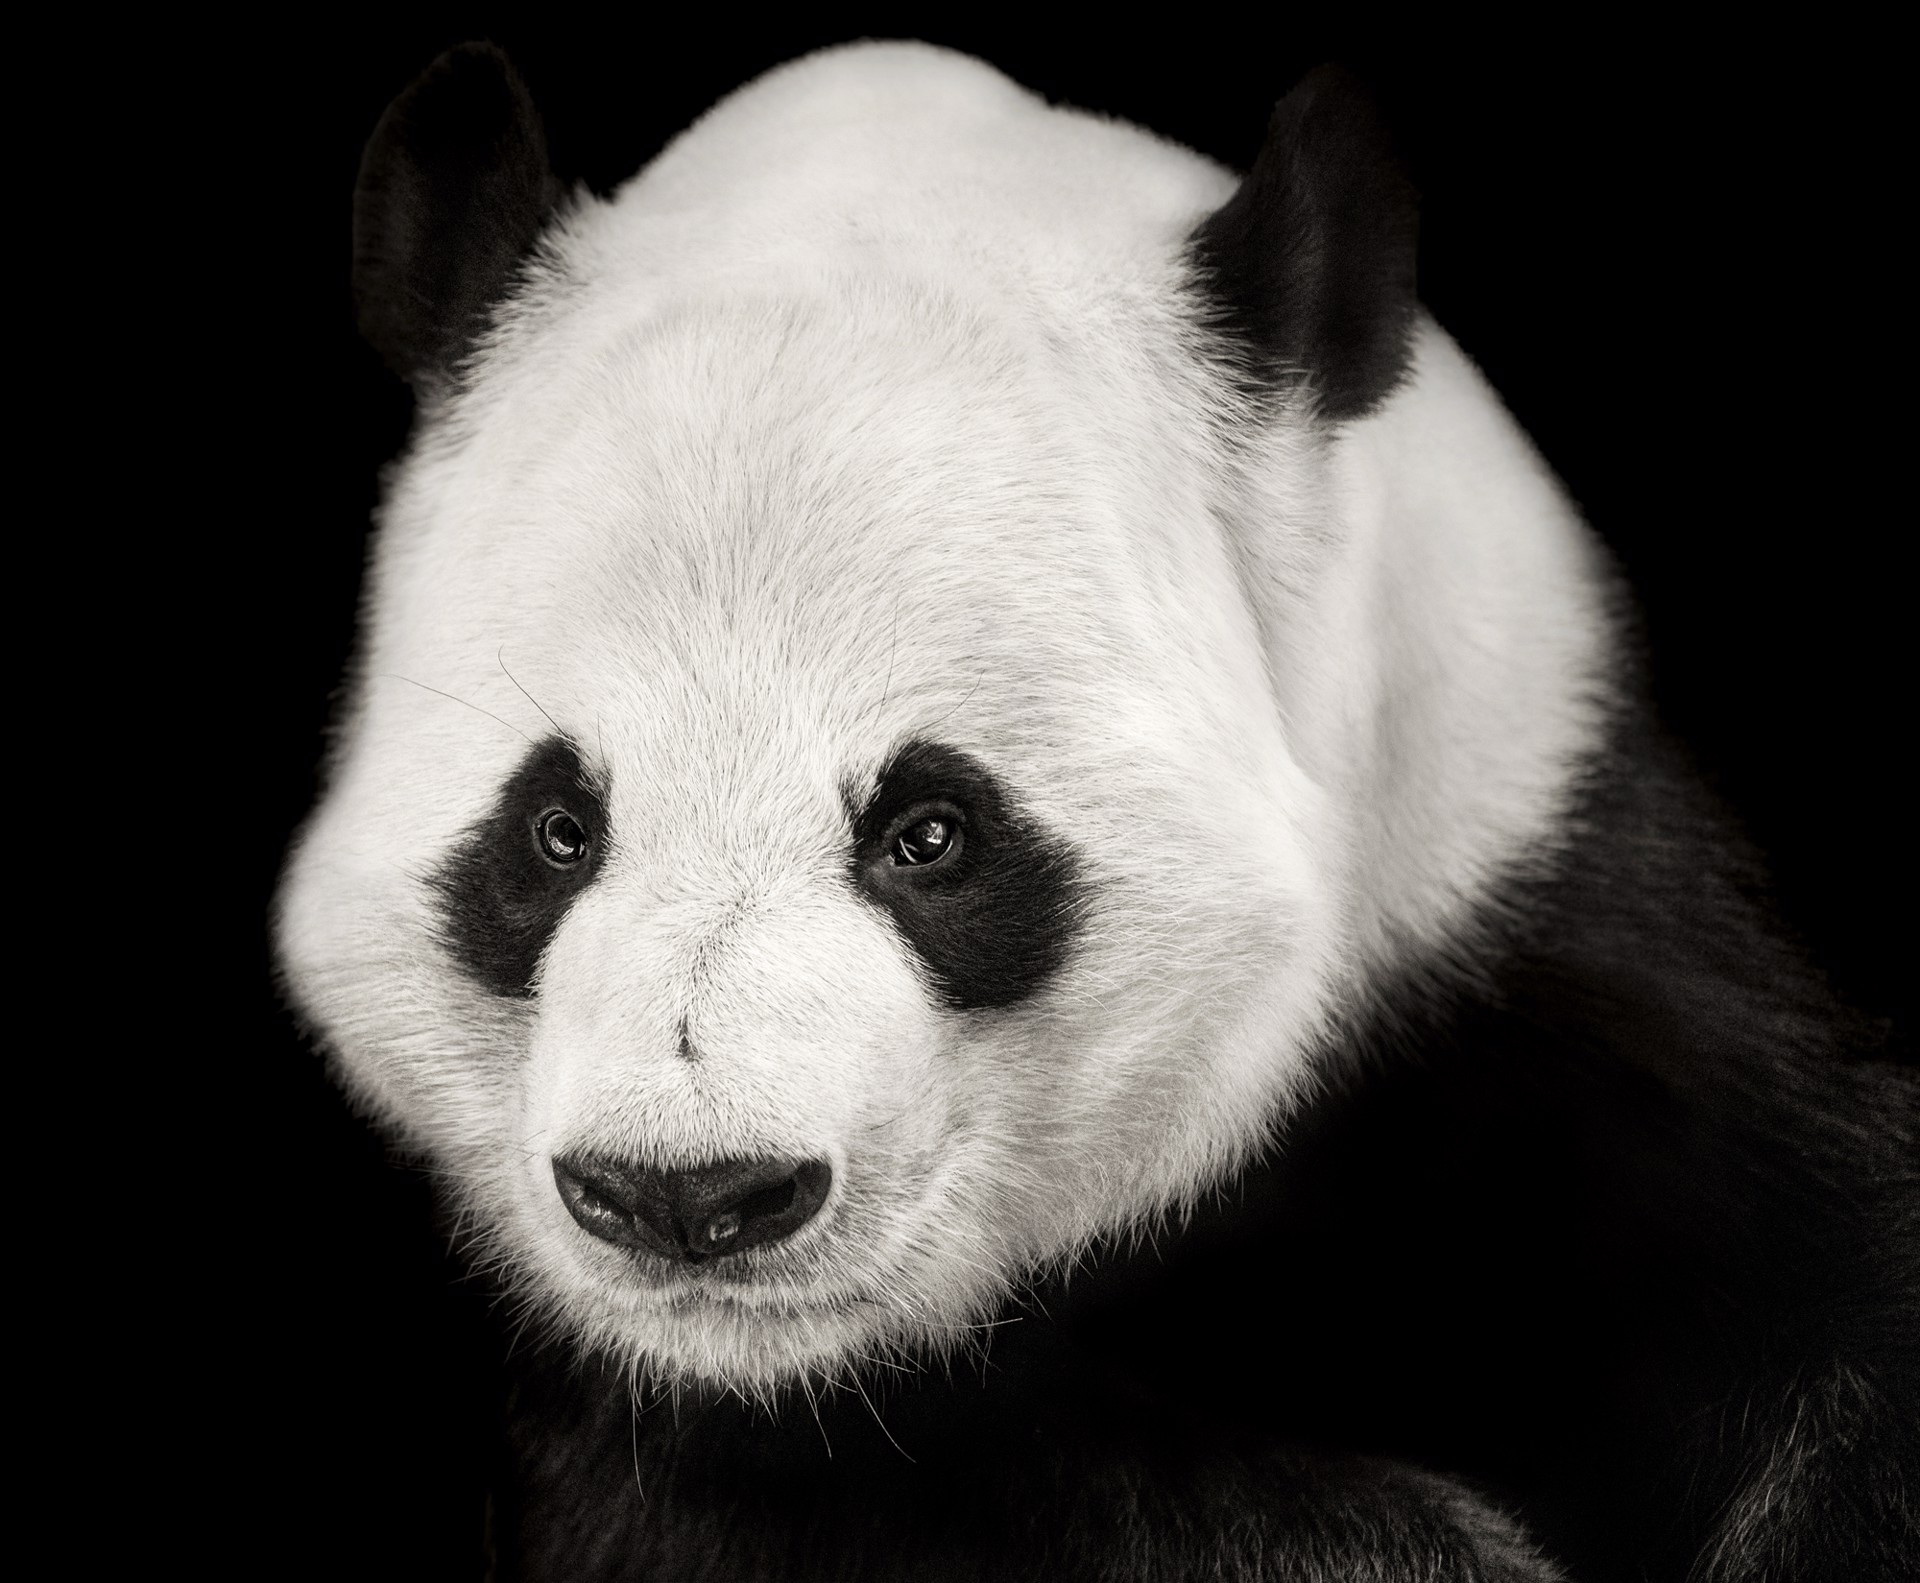 Portrait of a Panda by Lauren Chambers